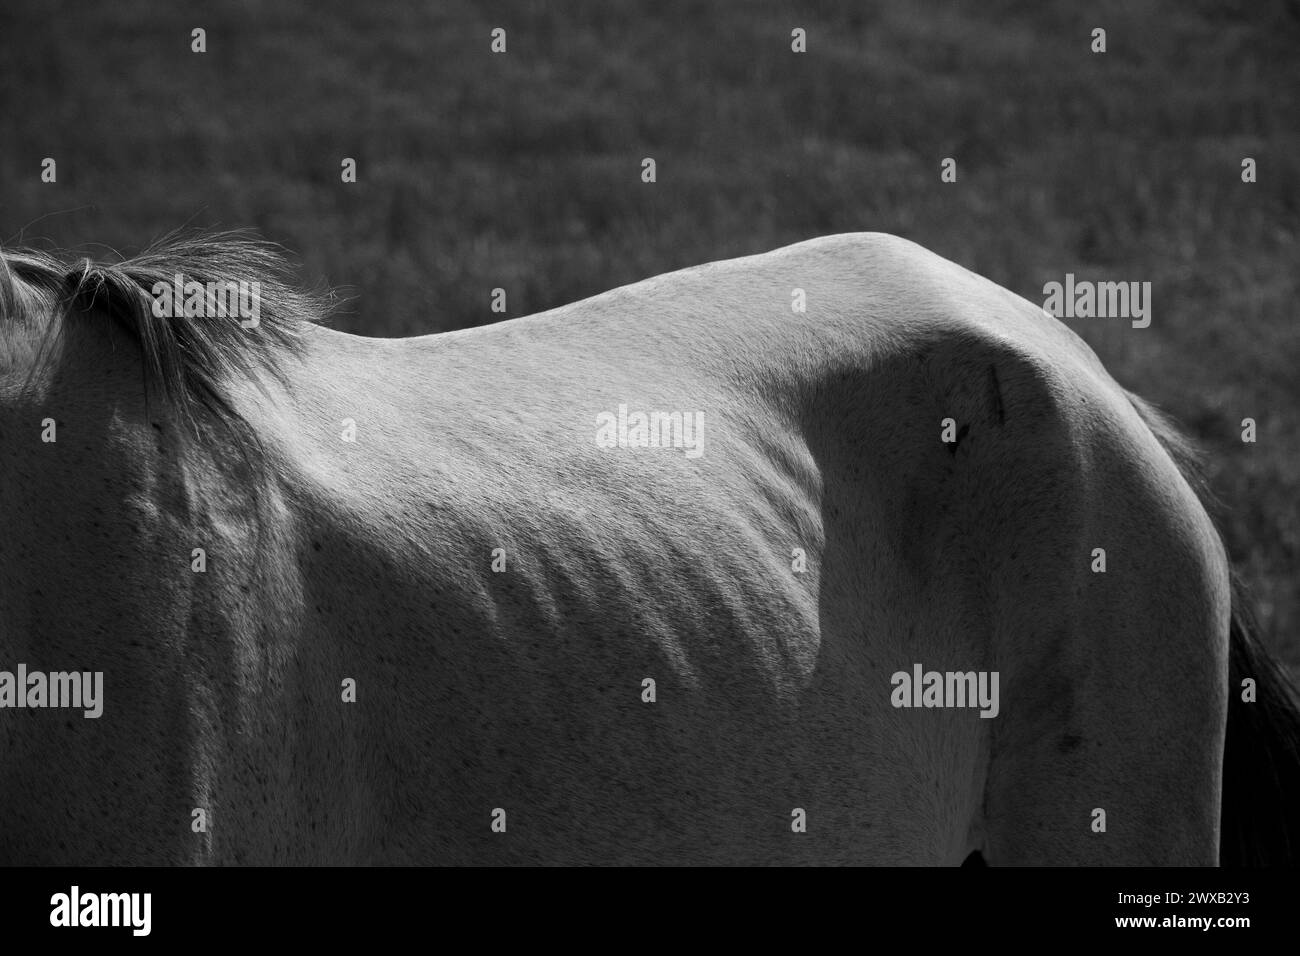 Le corps du cheval se forme sous le soleil. Province de Fars, Iran Banque D'Images